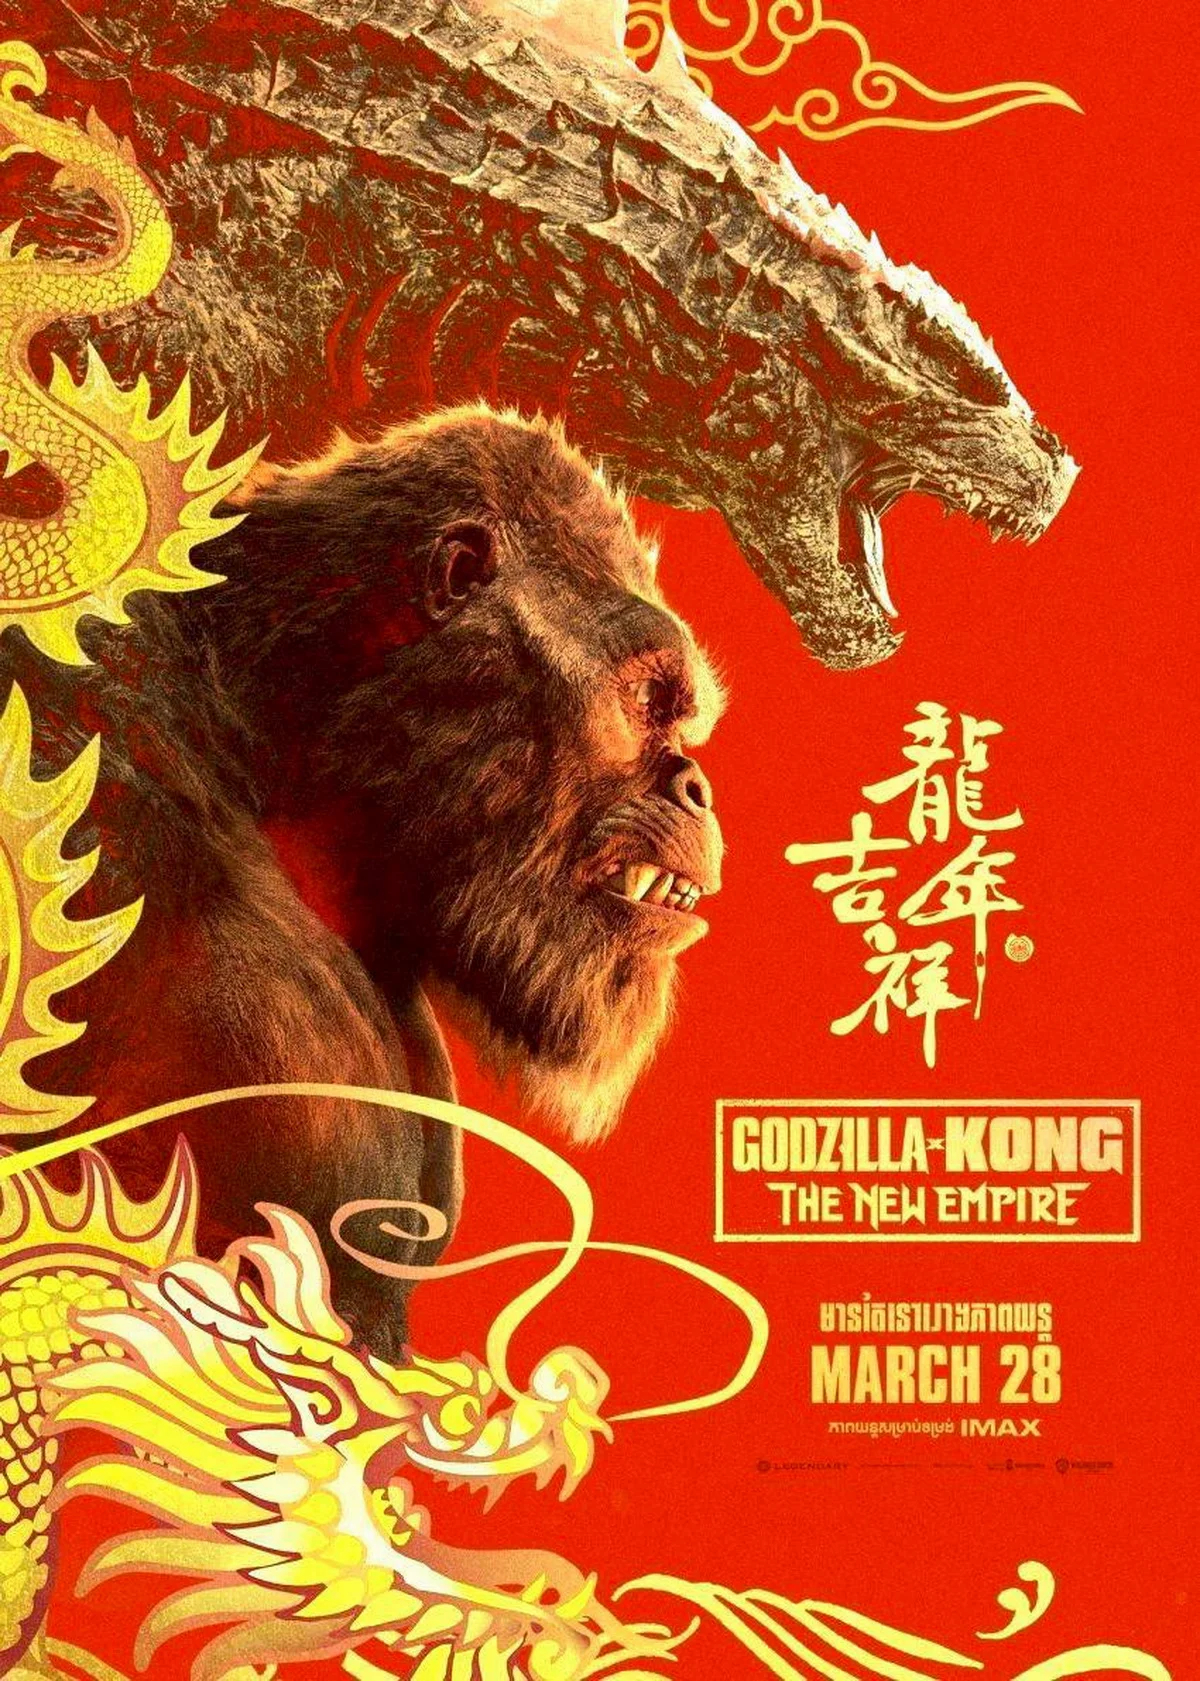 Постер «Годзиллы и Конга: Новая империя» к Китайскому новому году